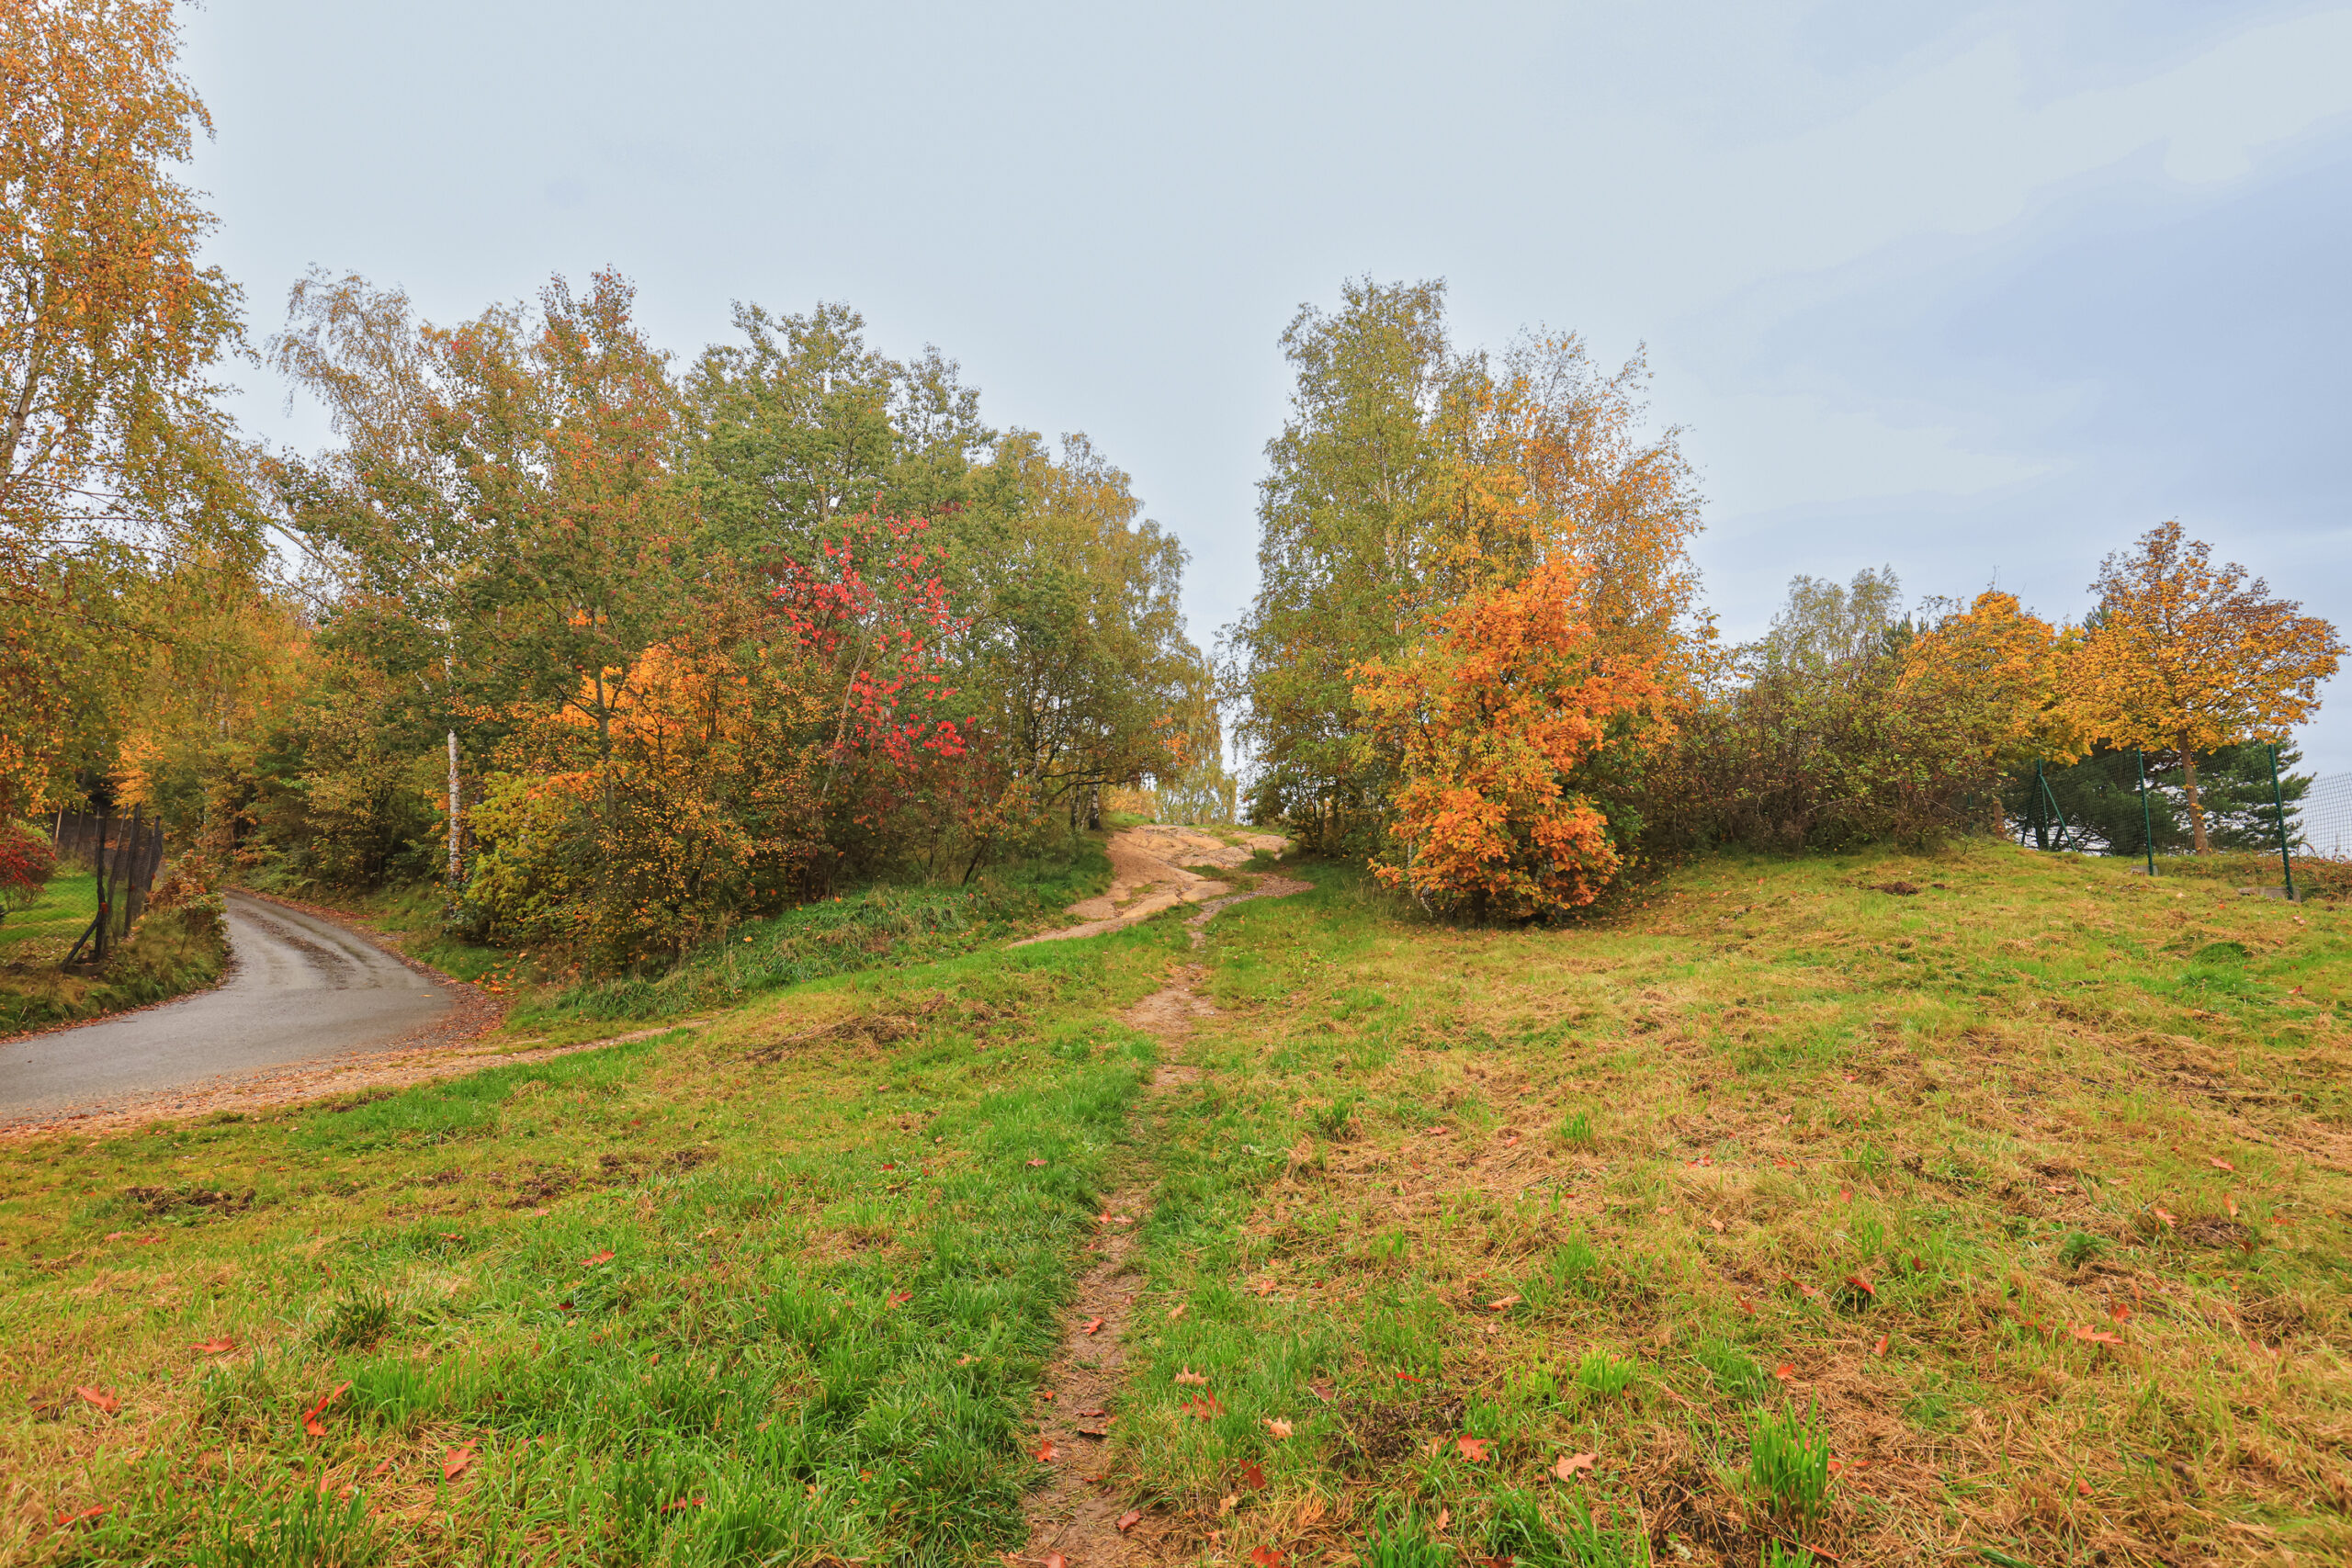 Nízké návrší s dřevinami v podzimních barvách, v popředí travnatý porost s pěšinou směřující do středu snímku (na vrch), levou částí prochází úzká místní komunikace a nezpevněná cesta.